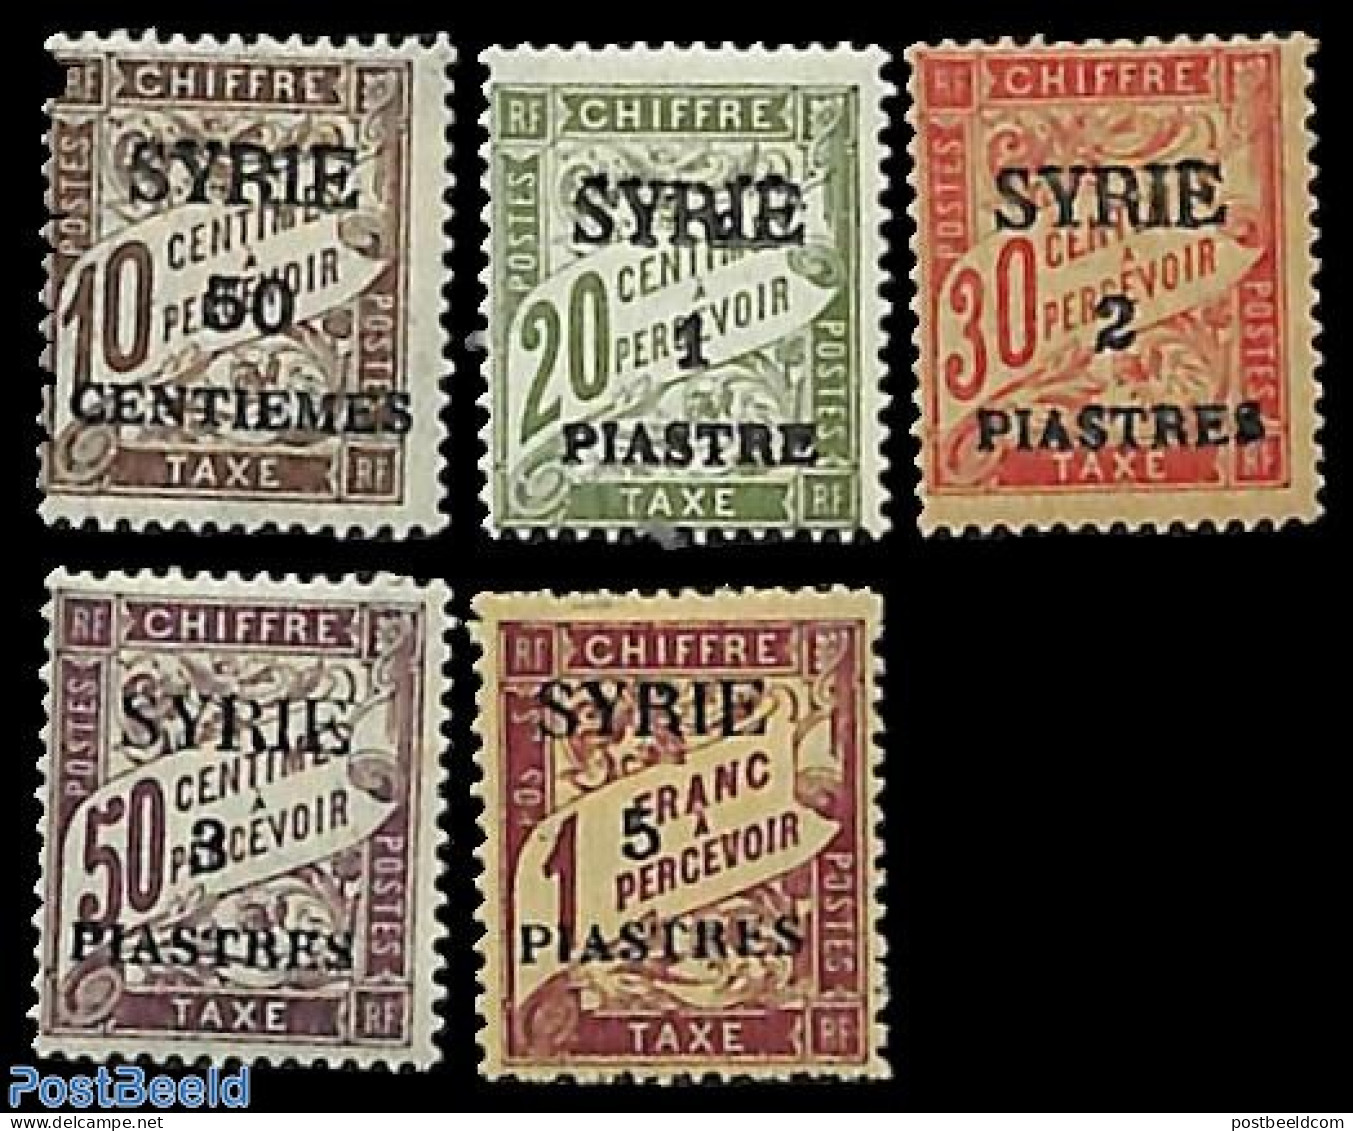 Syria 1924 Postage Due 5v, Unused (hinged) - Syrien